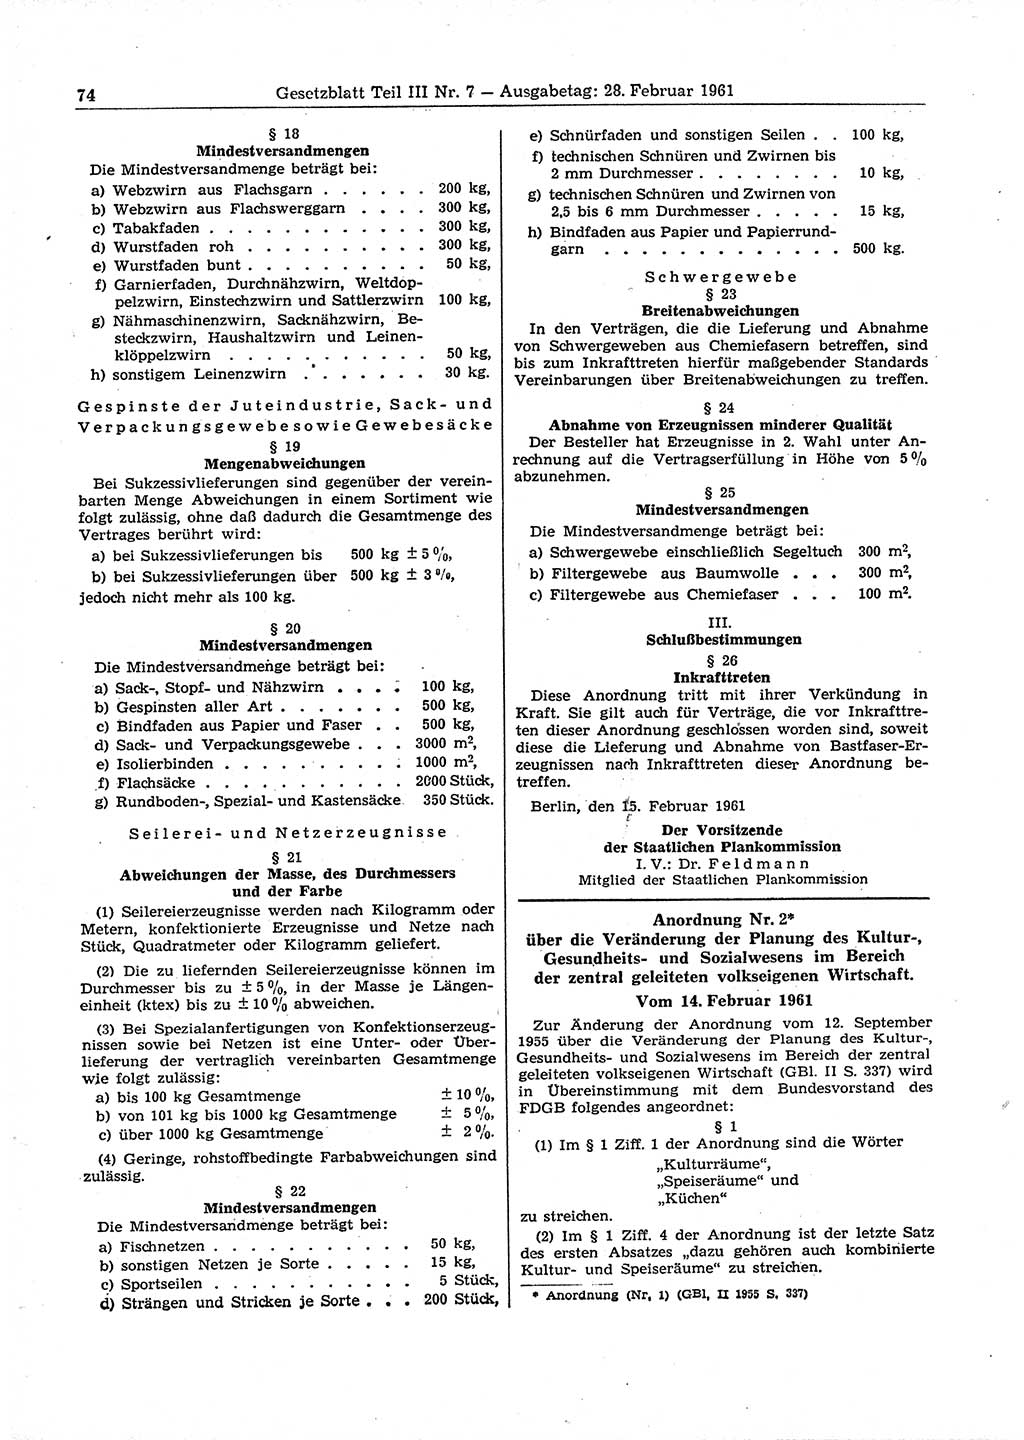 Gesetzblatt (GBl.) der Deutschen Demokratischen Republik (DDR) Teil ⅠⅠⅠ 1961, Seite 74 (GBl. DDR ⅠⅠⅠ 1961, S. 74)